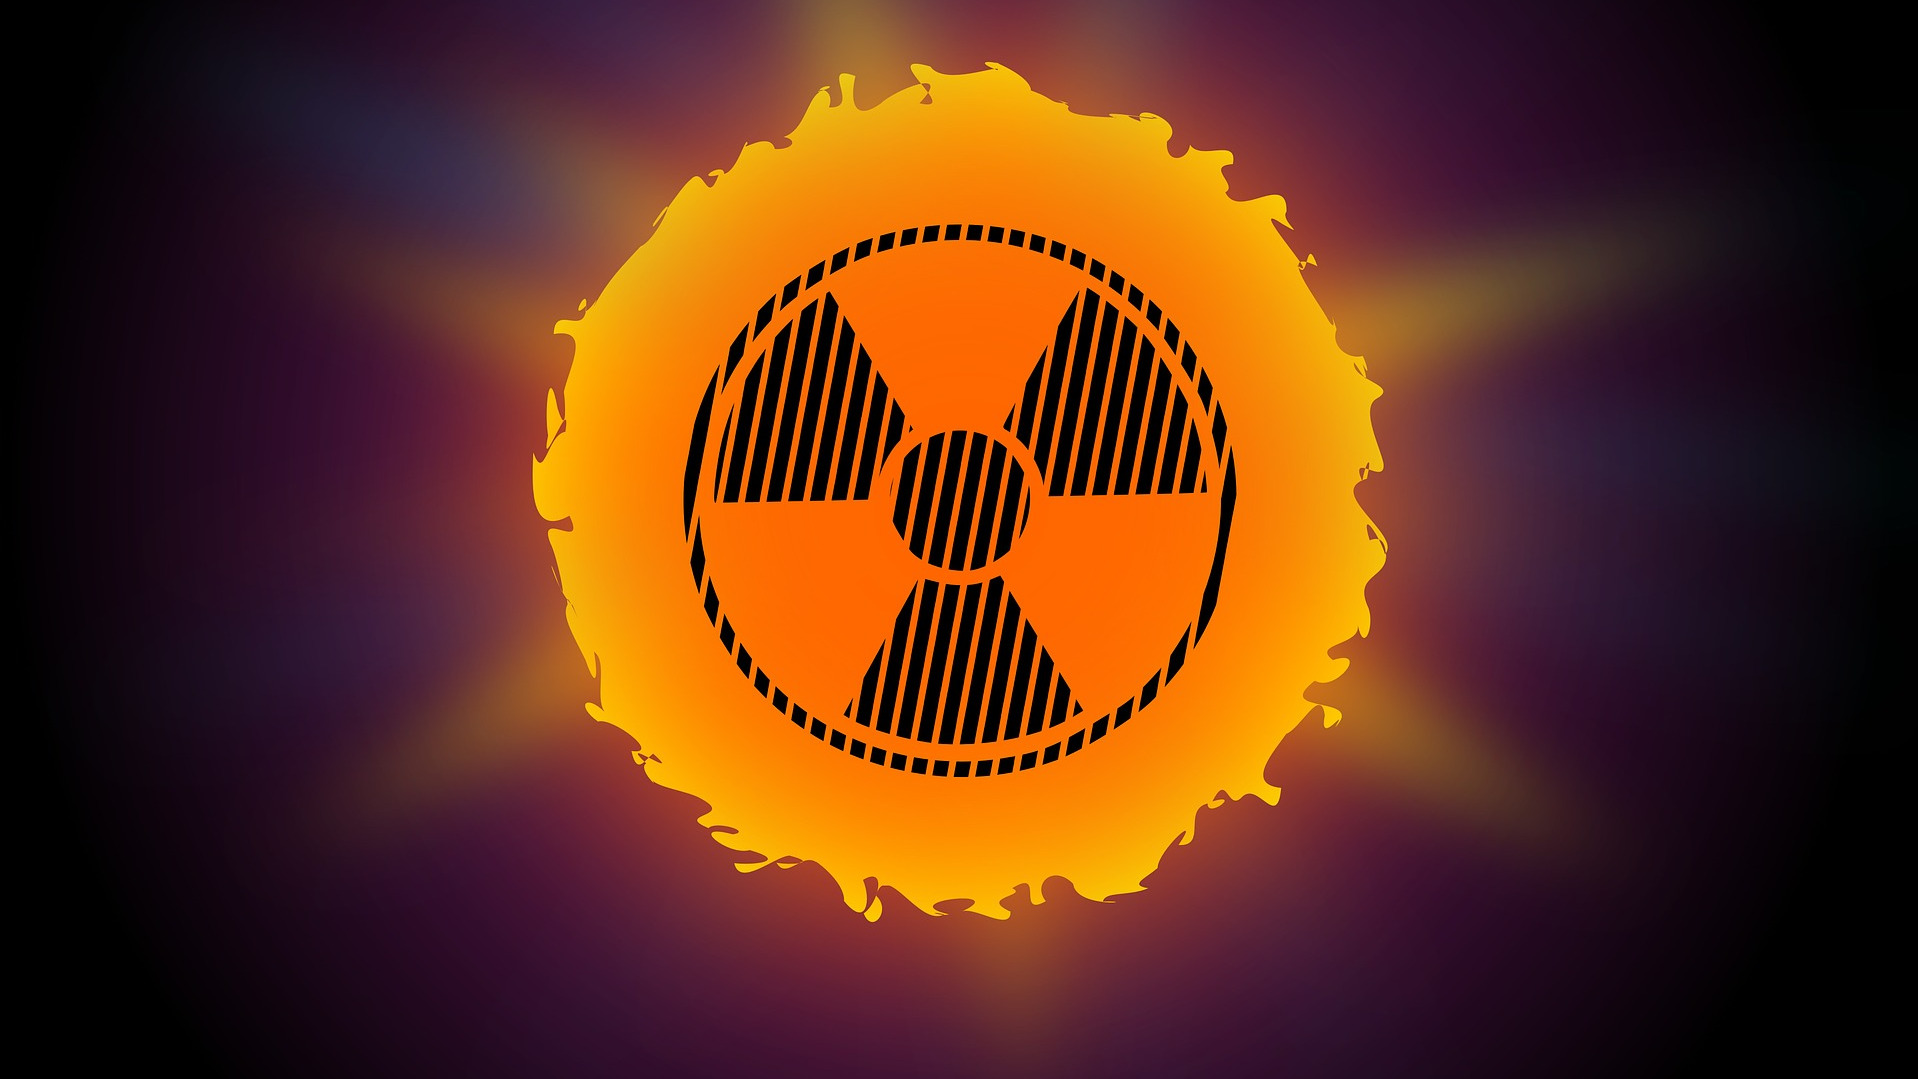 Radioactive warning sign in sun